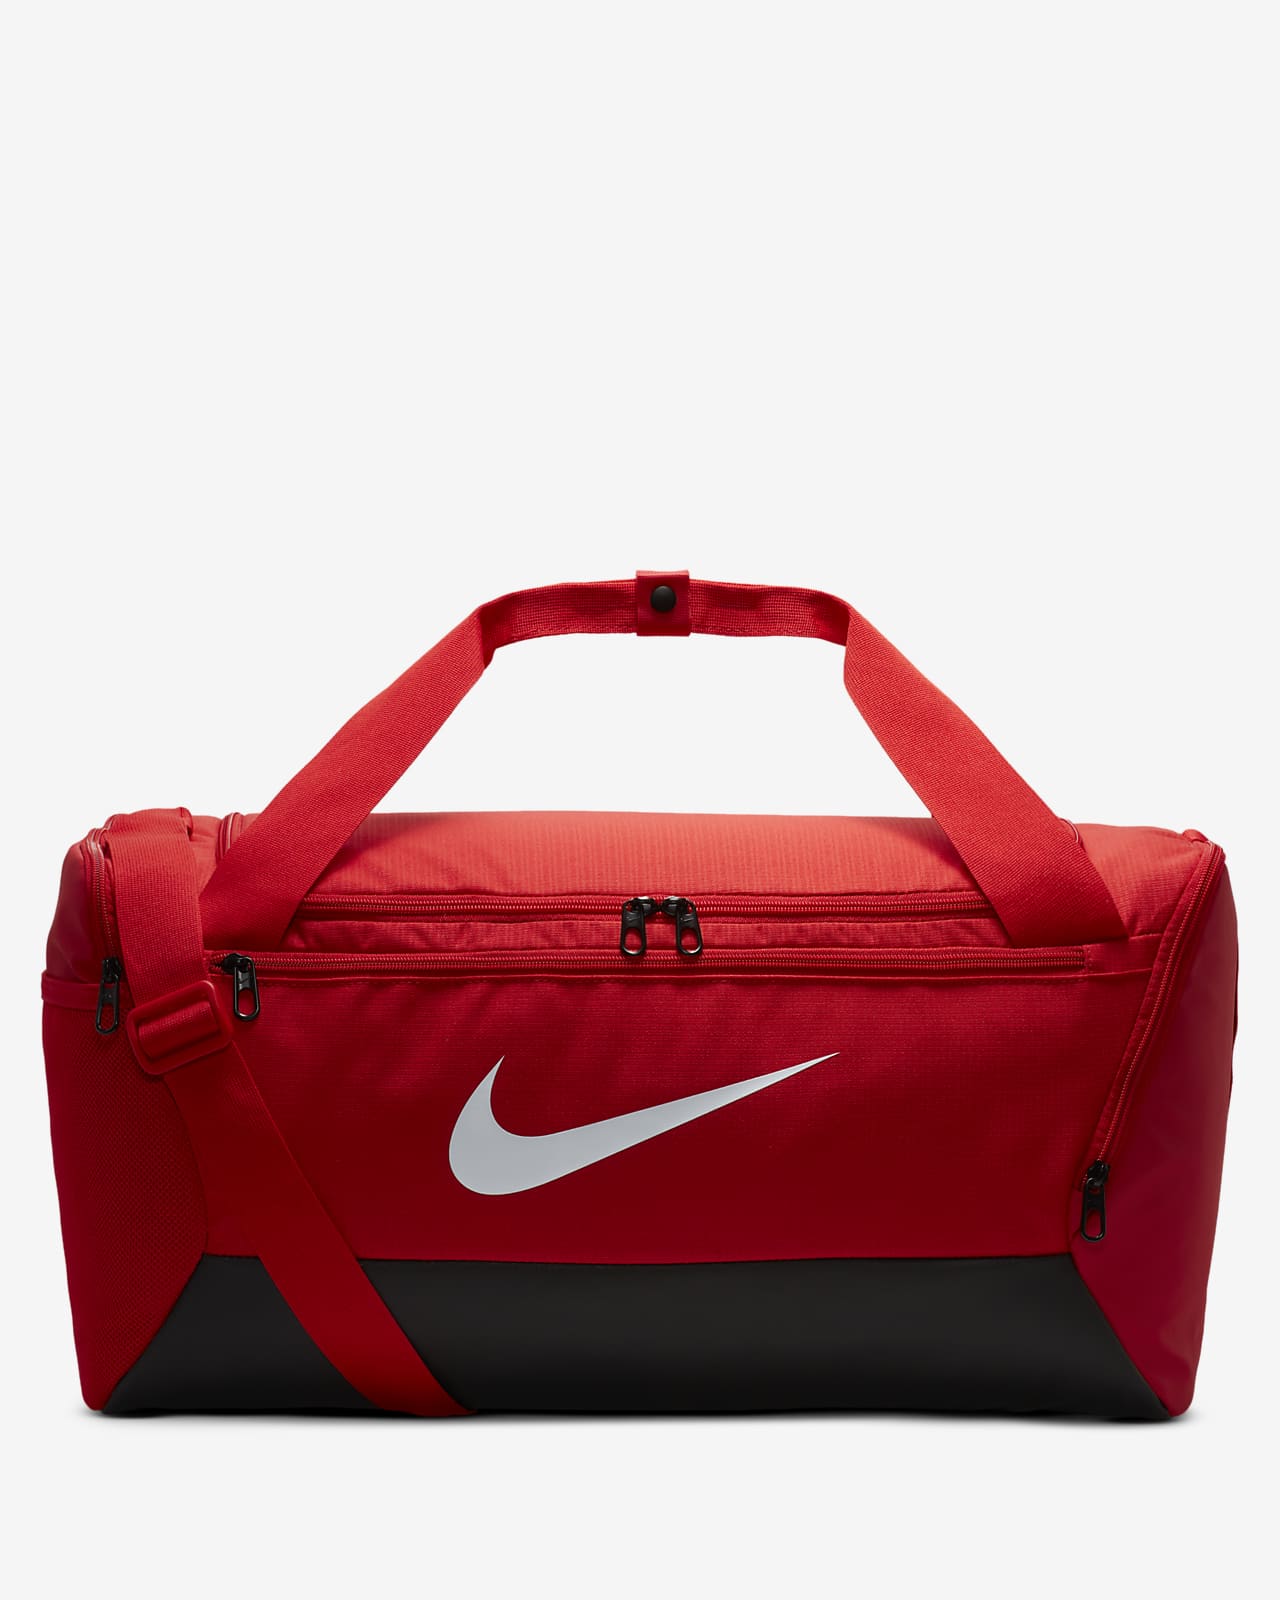 Buy Nike Brasilia Training Duffel Bag (Medium) Black in KSA -SSS